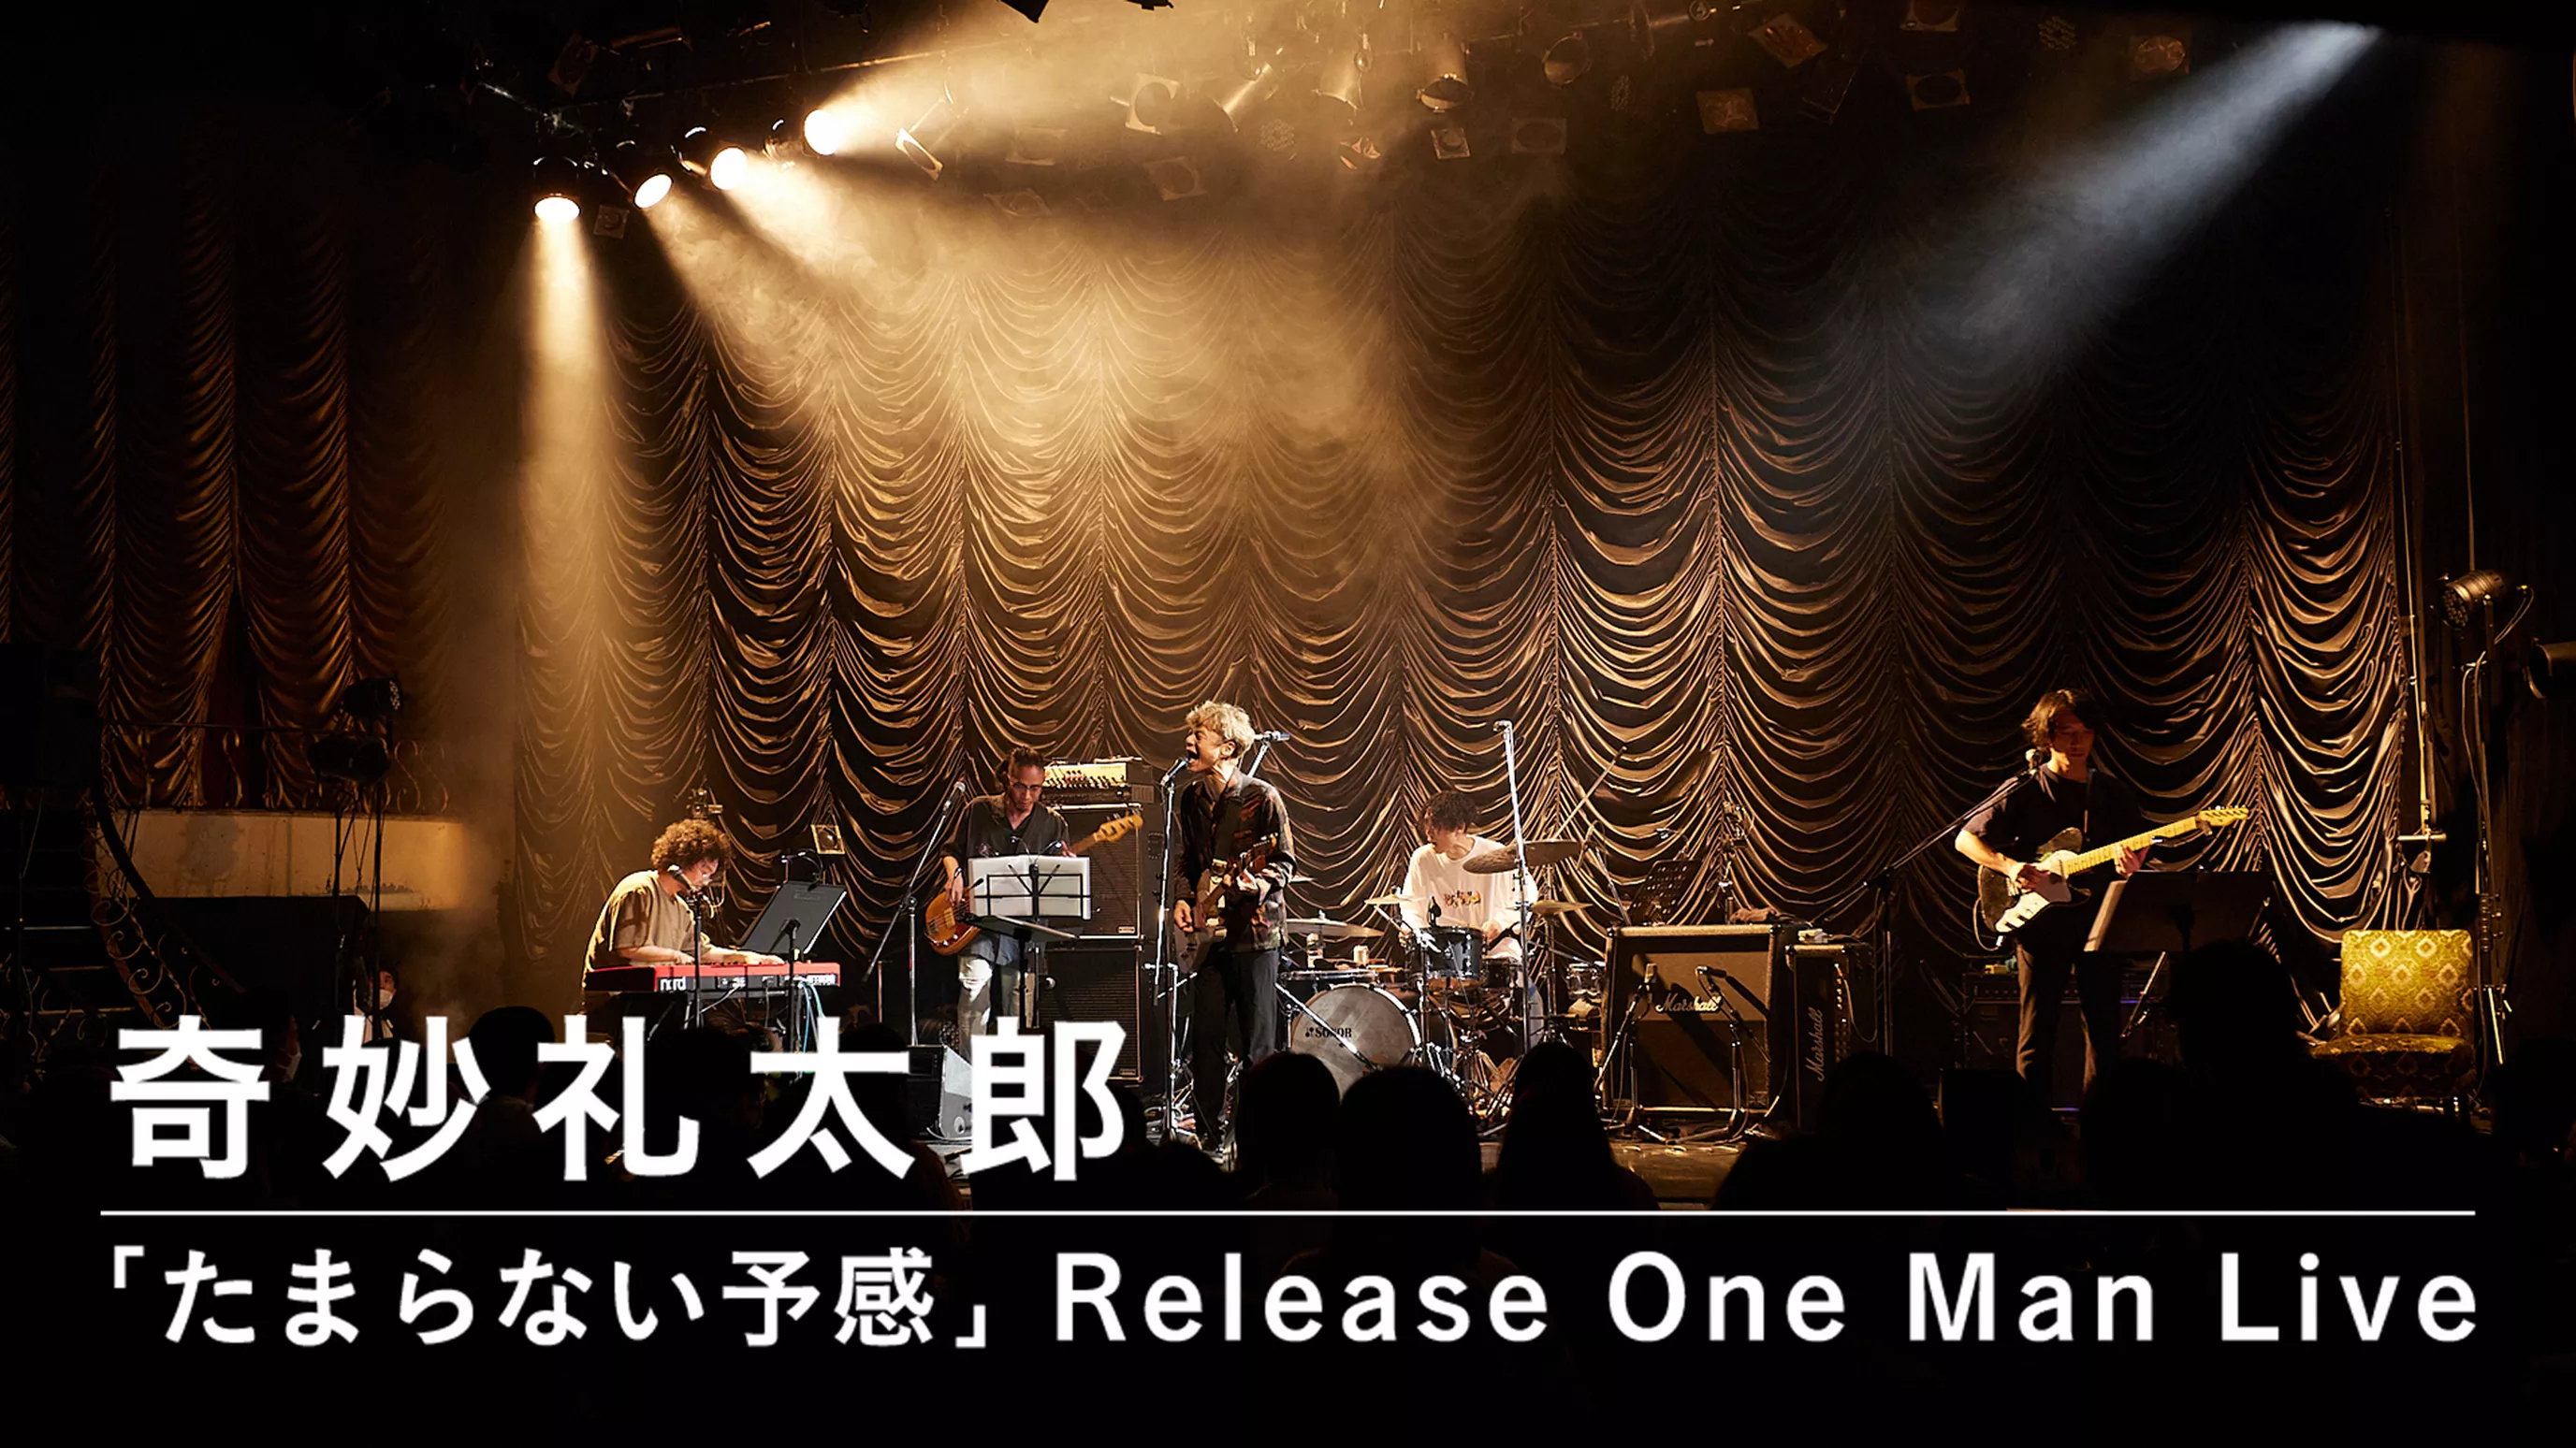 奇妙礼太郎「たまらない予感」Release One Man Live